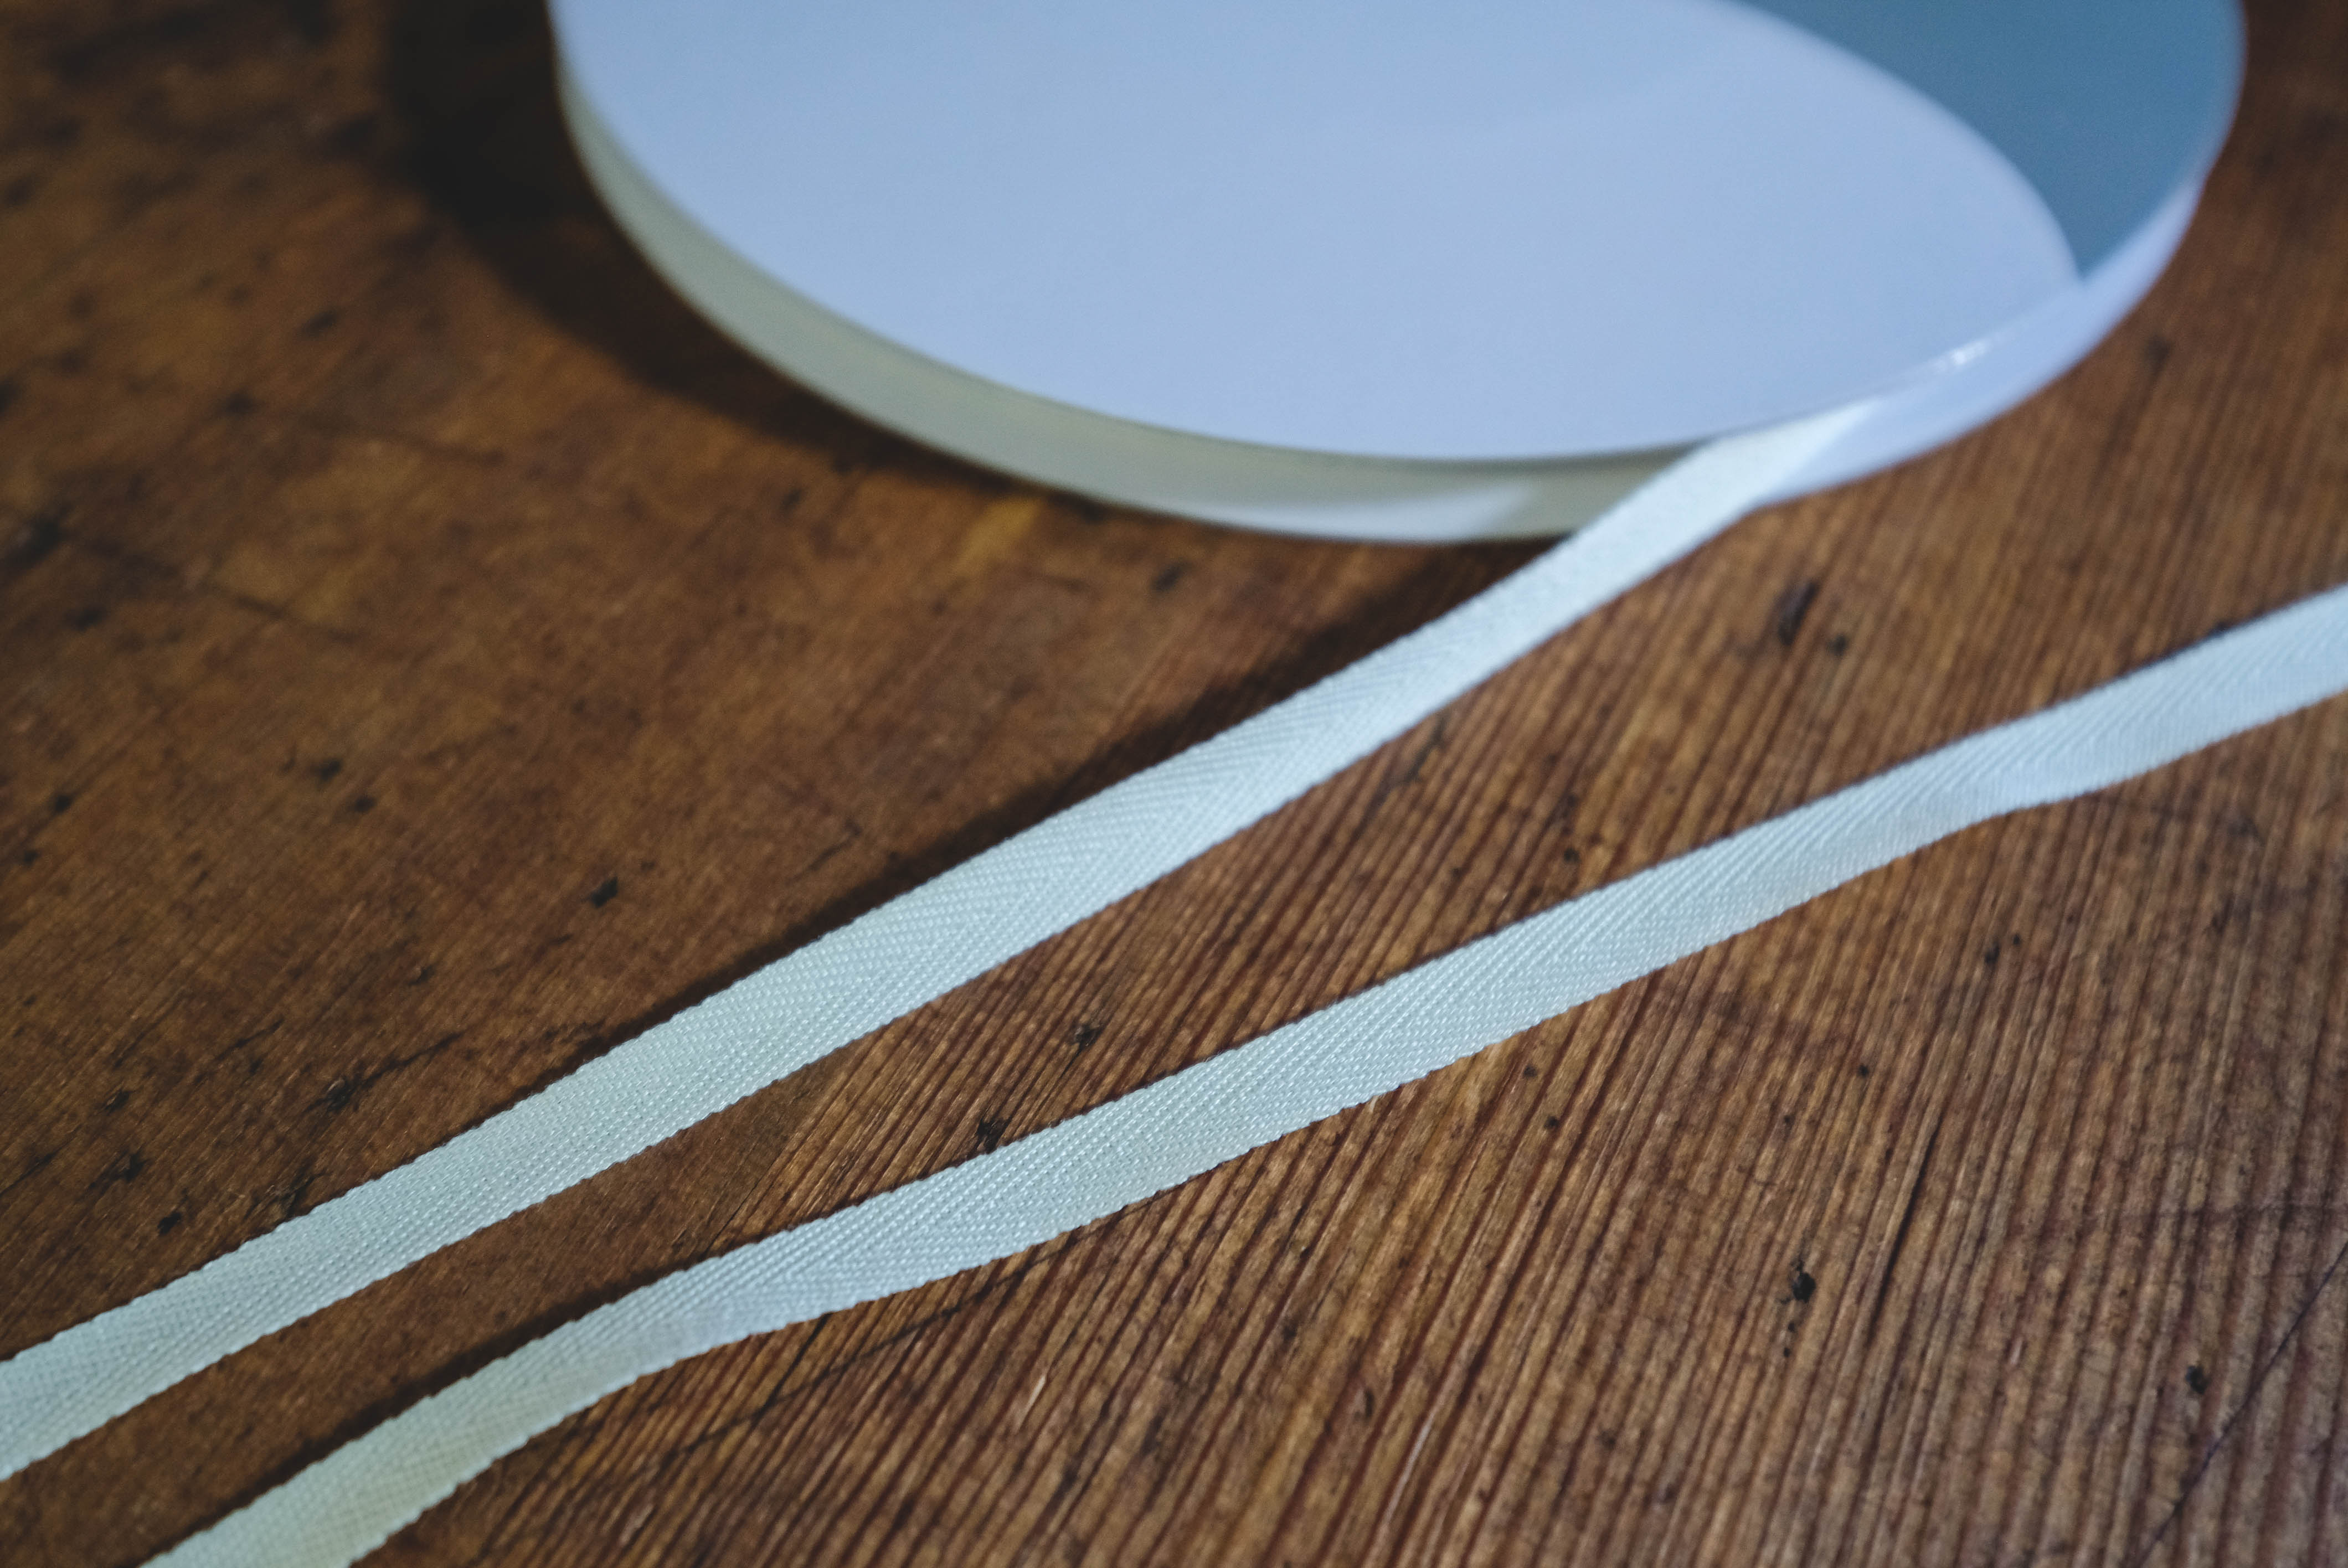 Cotton herringbone tape 3mm- thin natural white